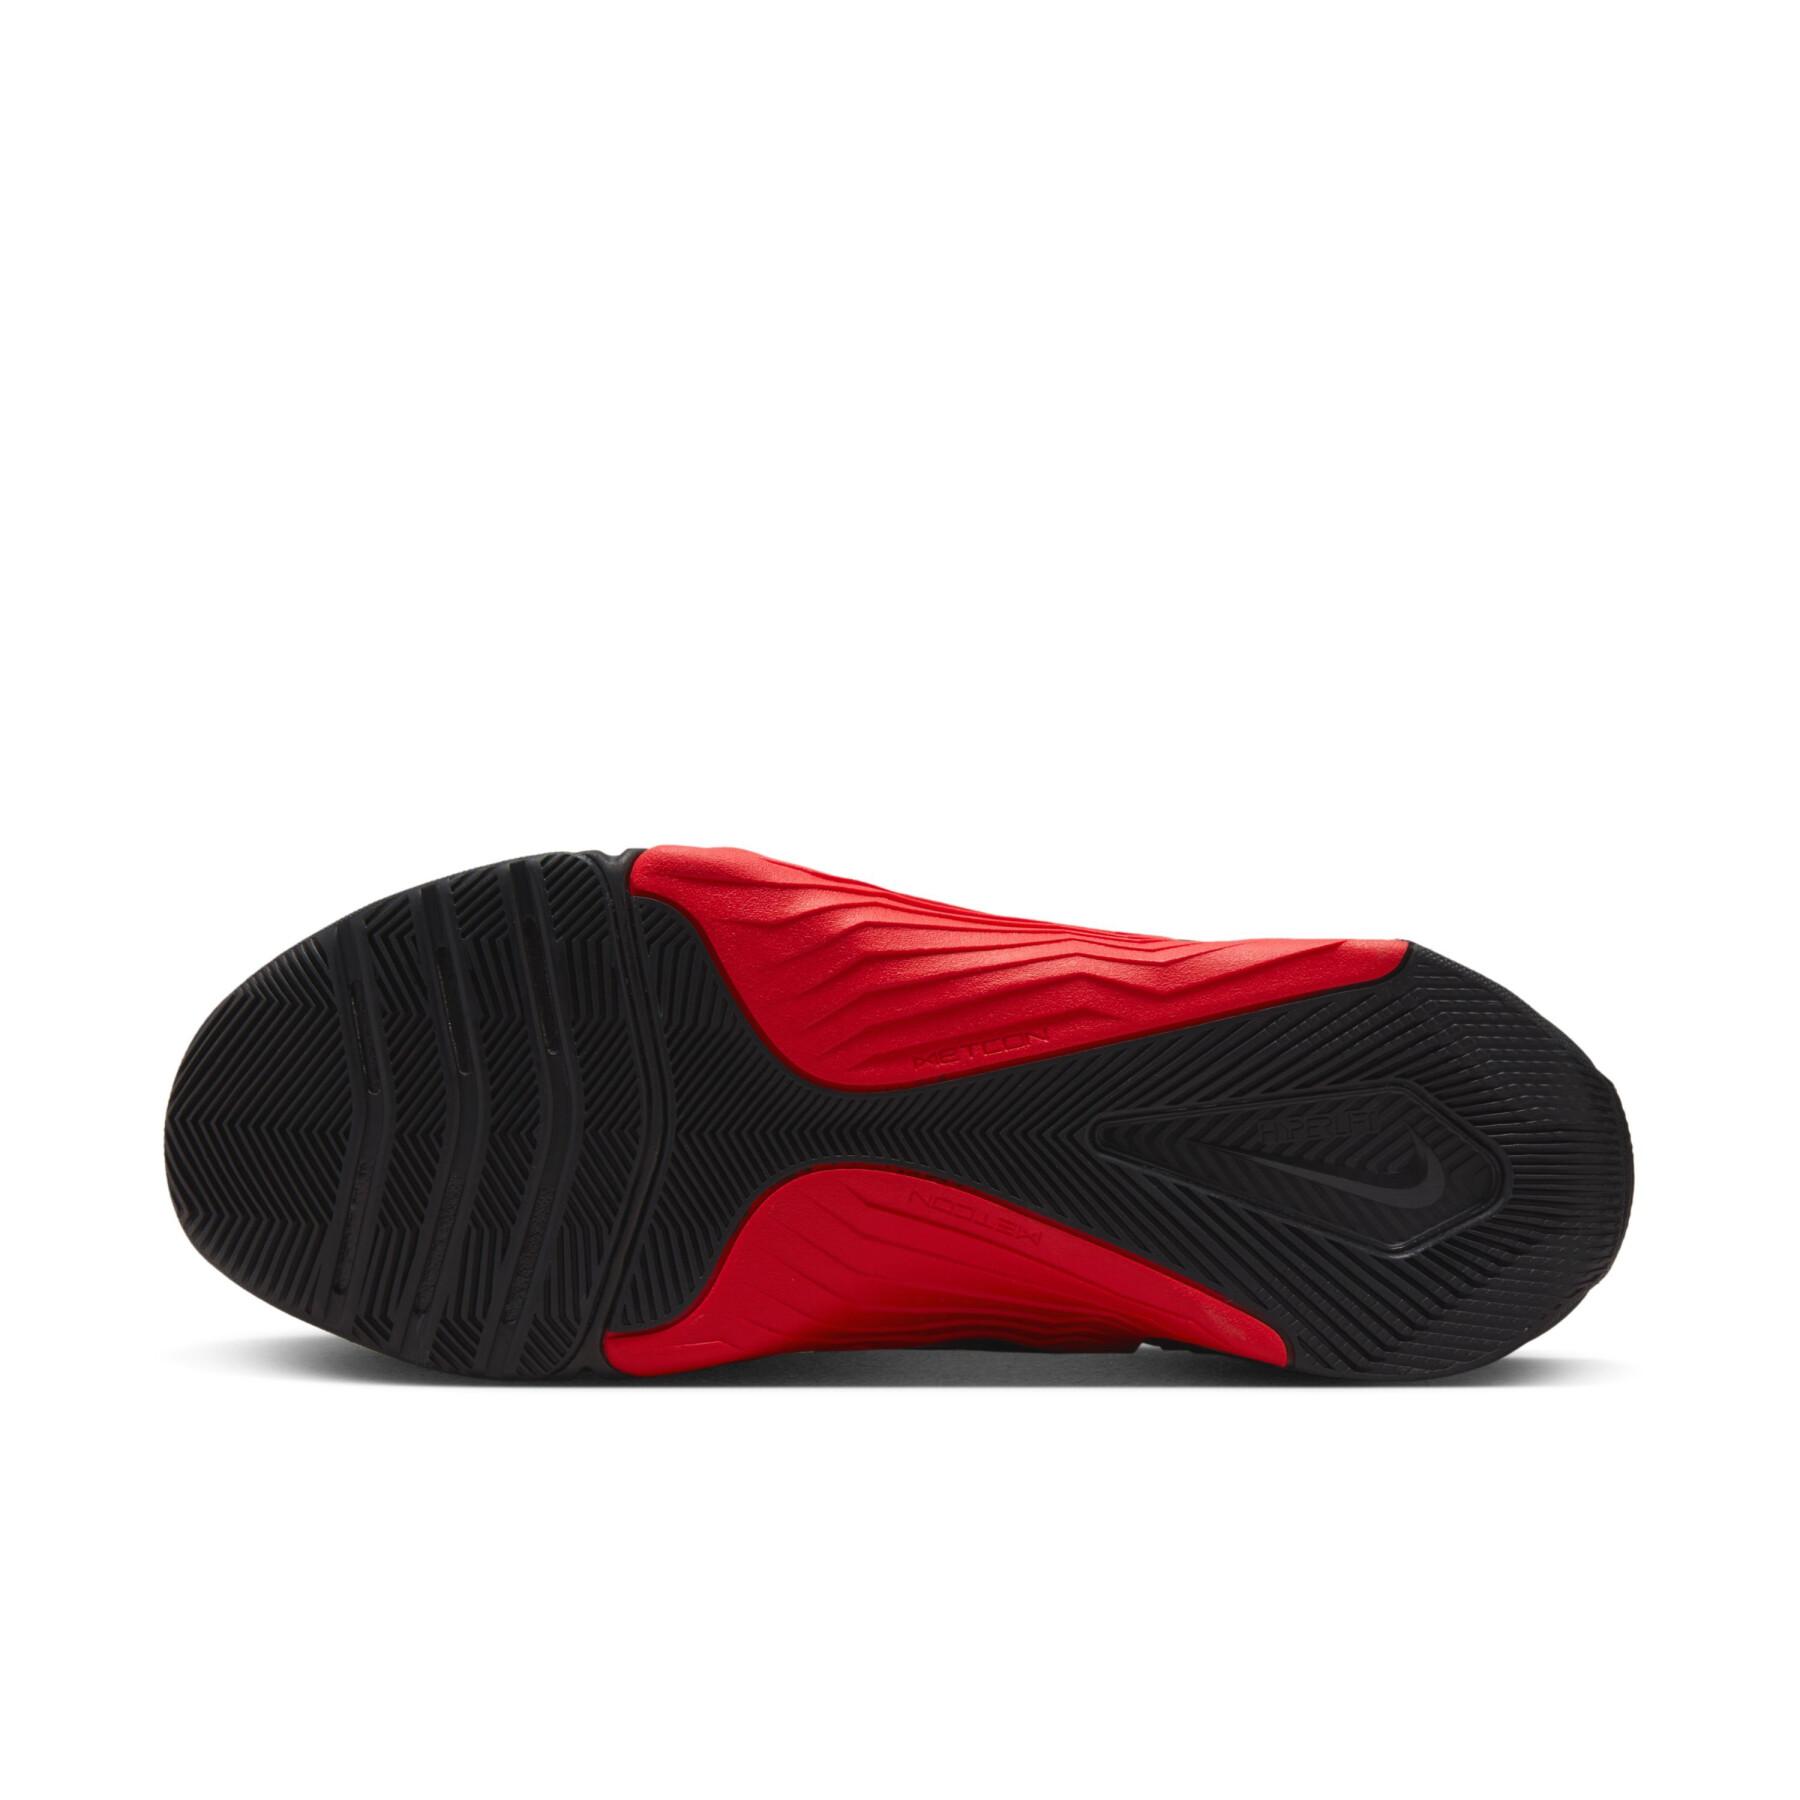 Chaussures indoor Nike Metcon 8 MF